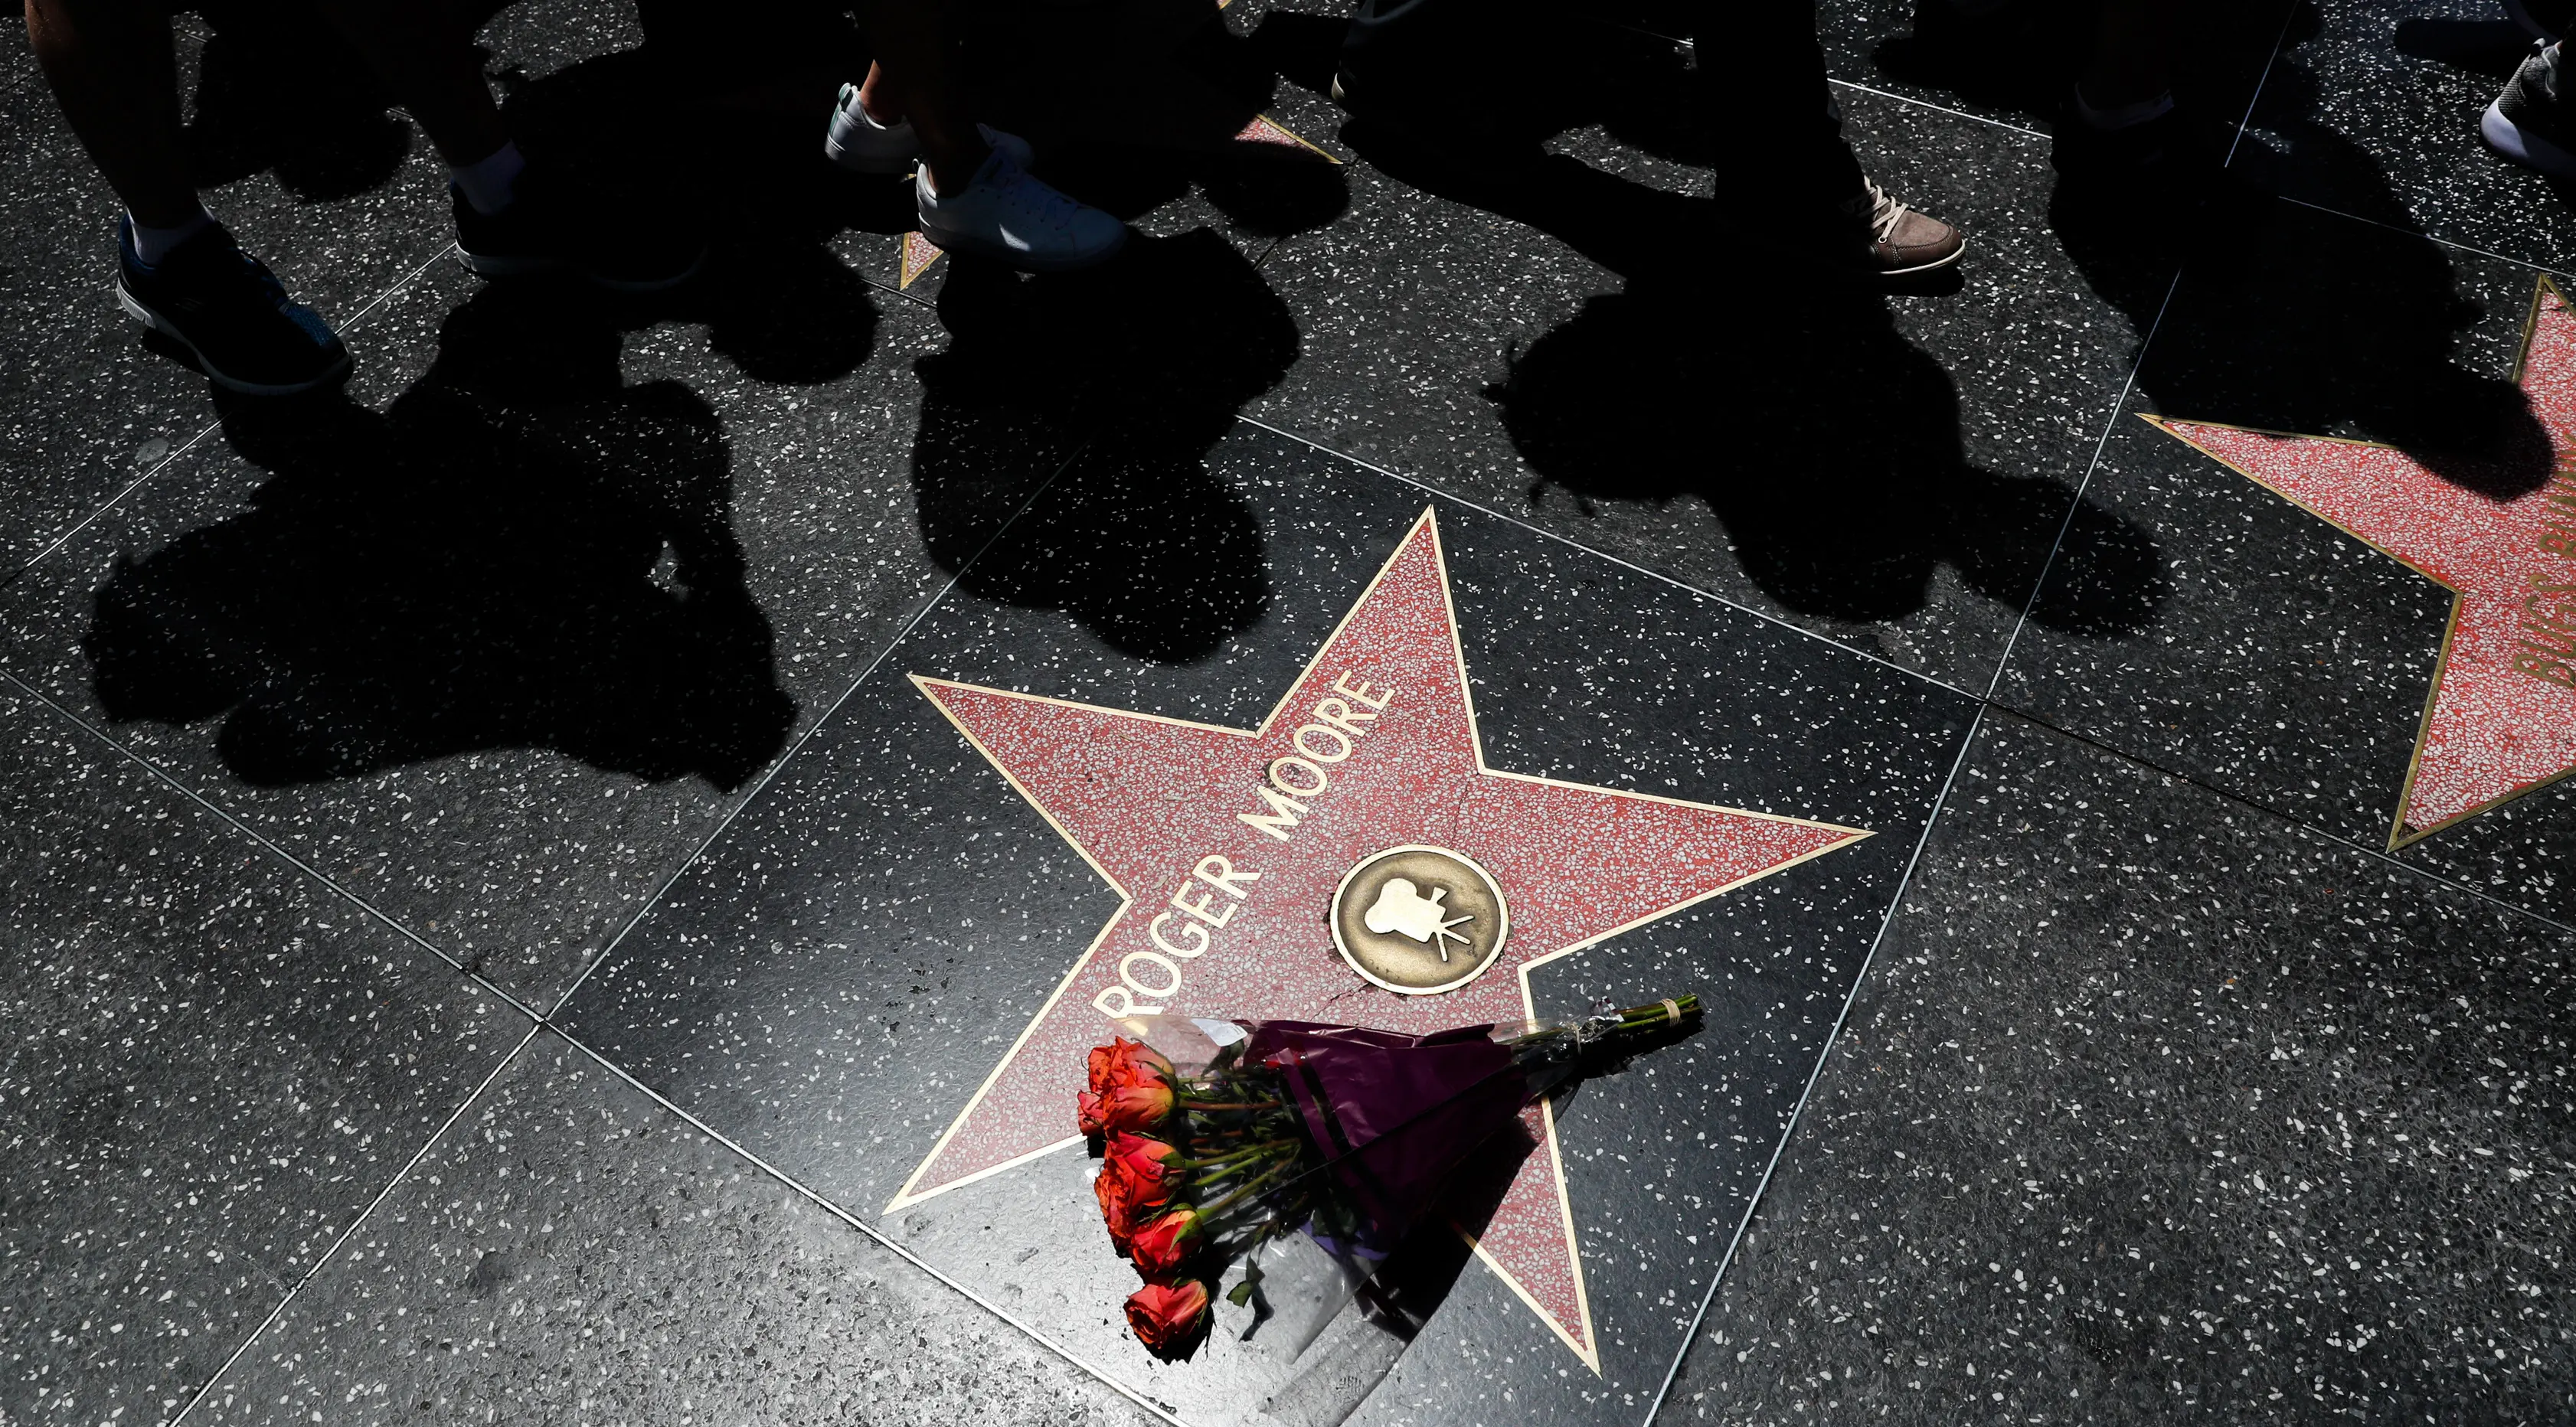 Sebuah buket bunga diletakkan di atas bintang Walk of Fame milik aktor Inggris, Roger Moore, di Hollywood, Los Angeles, Selasa (23/5). Aktor yang namanya dikenal karena memerankan James Bond itu meninggal dunia pada usia 89 tahun. (AP Photo/Jae C. Hong)